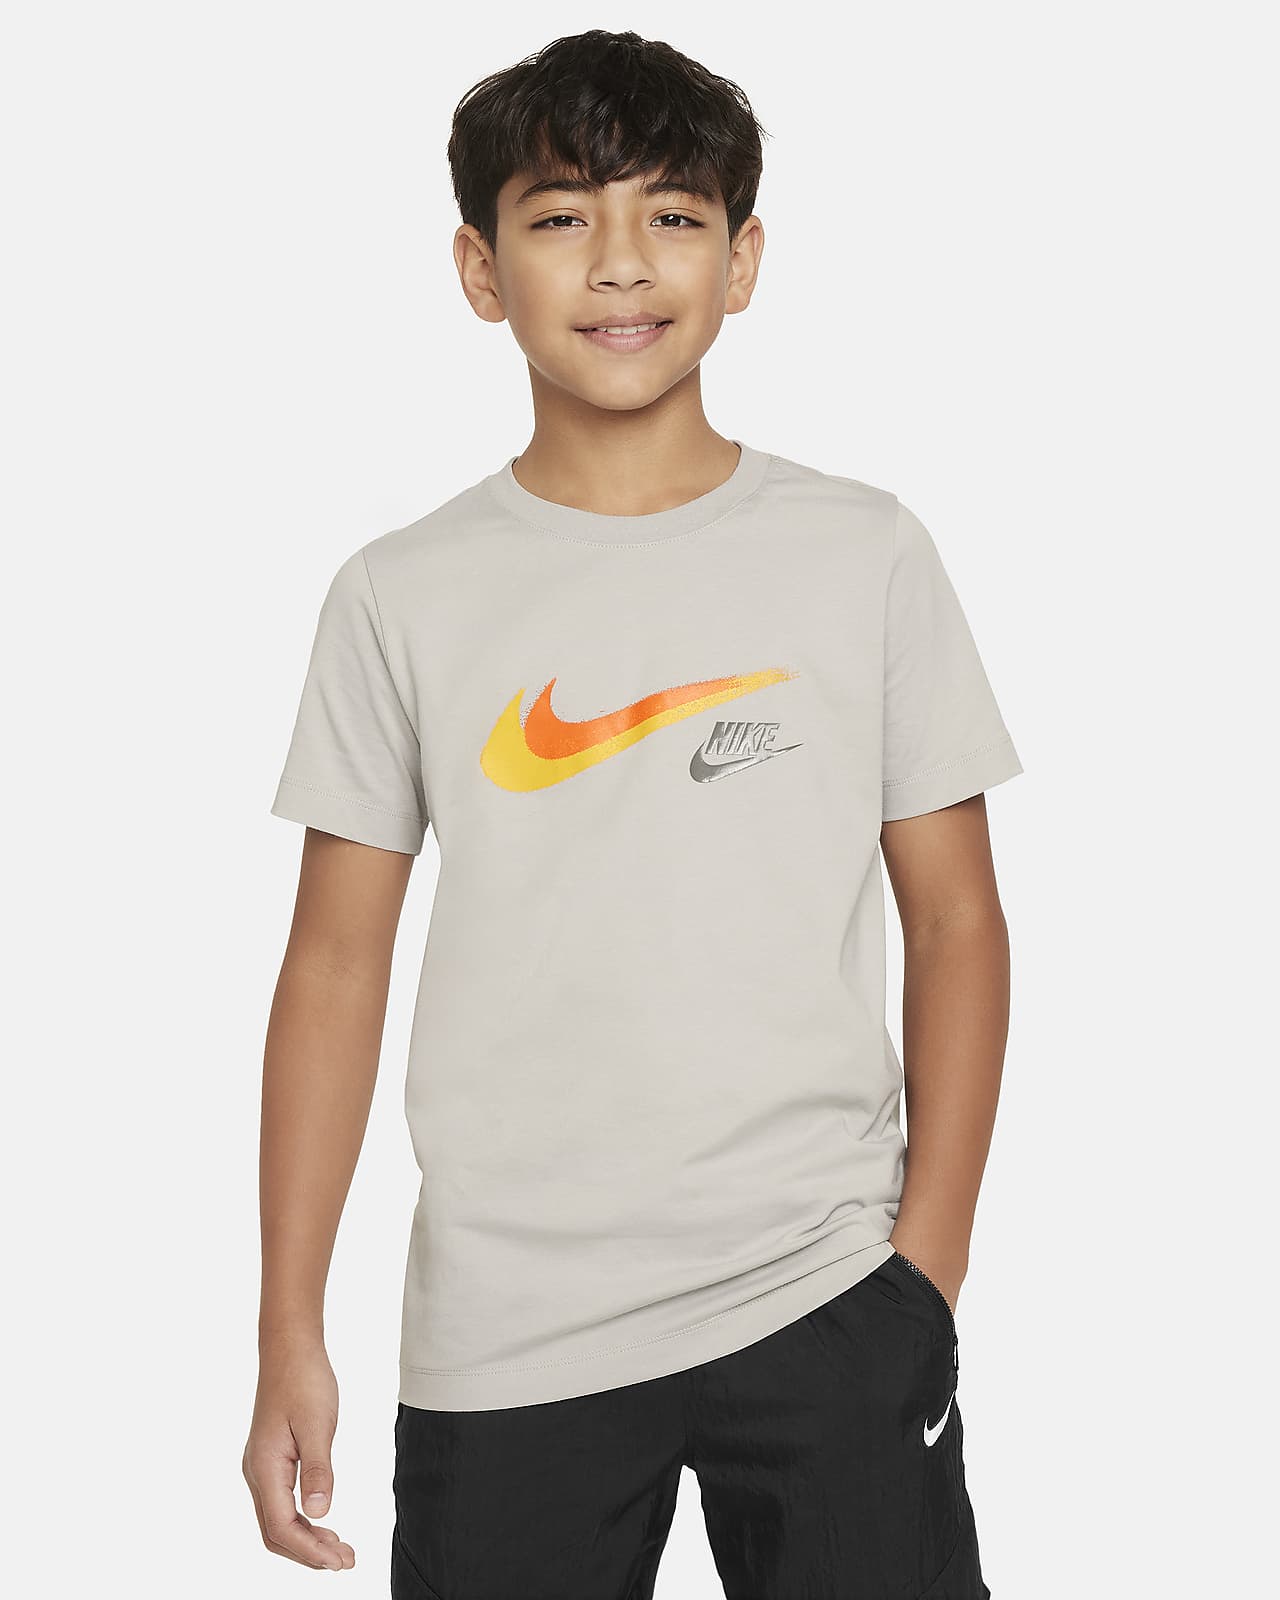 Nike Sportswear T-Shirt mit Grafik für ältere Kinder (Jungen)